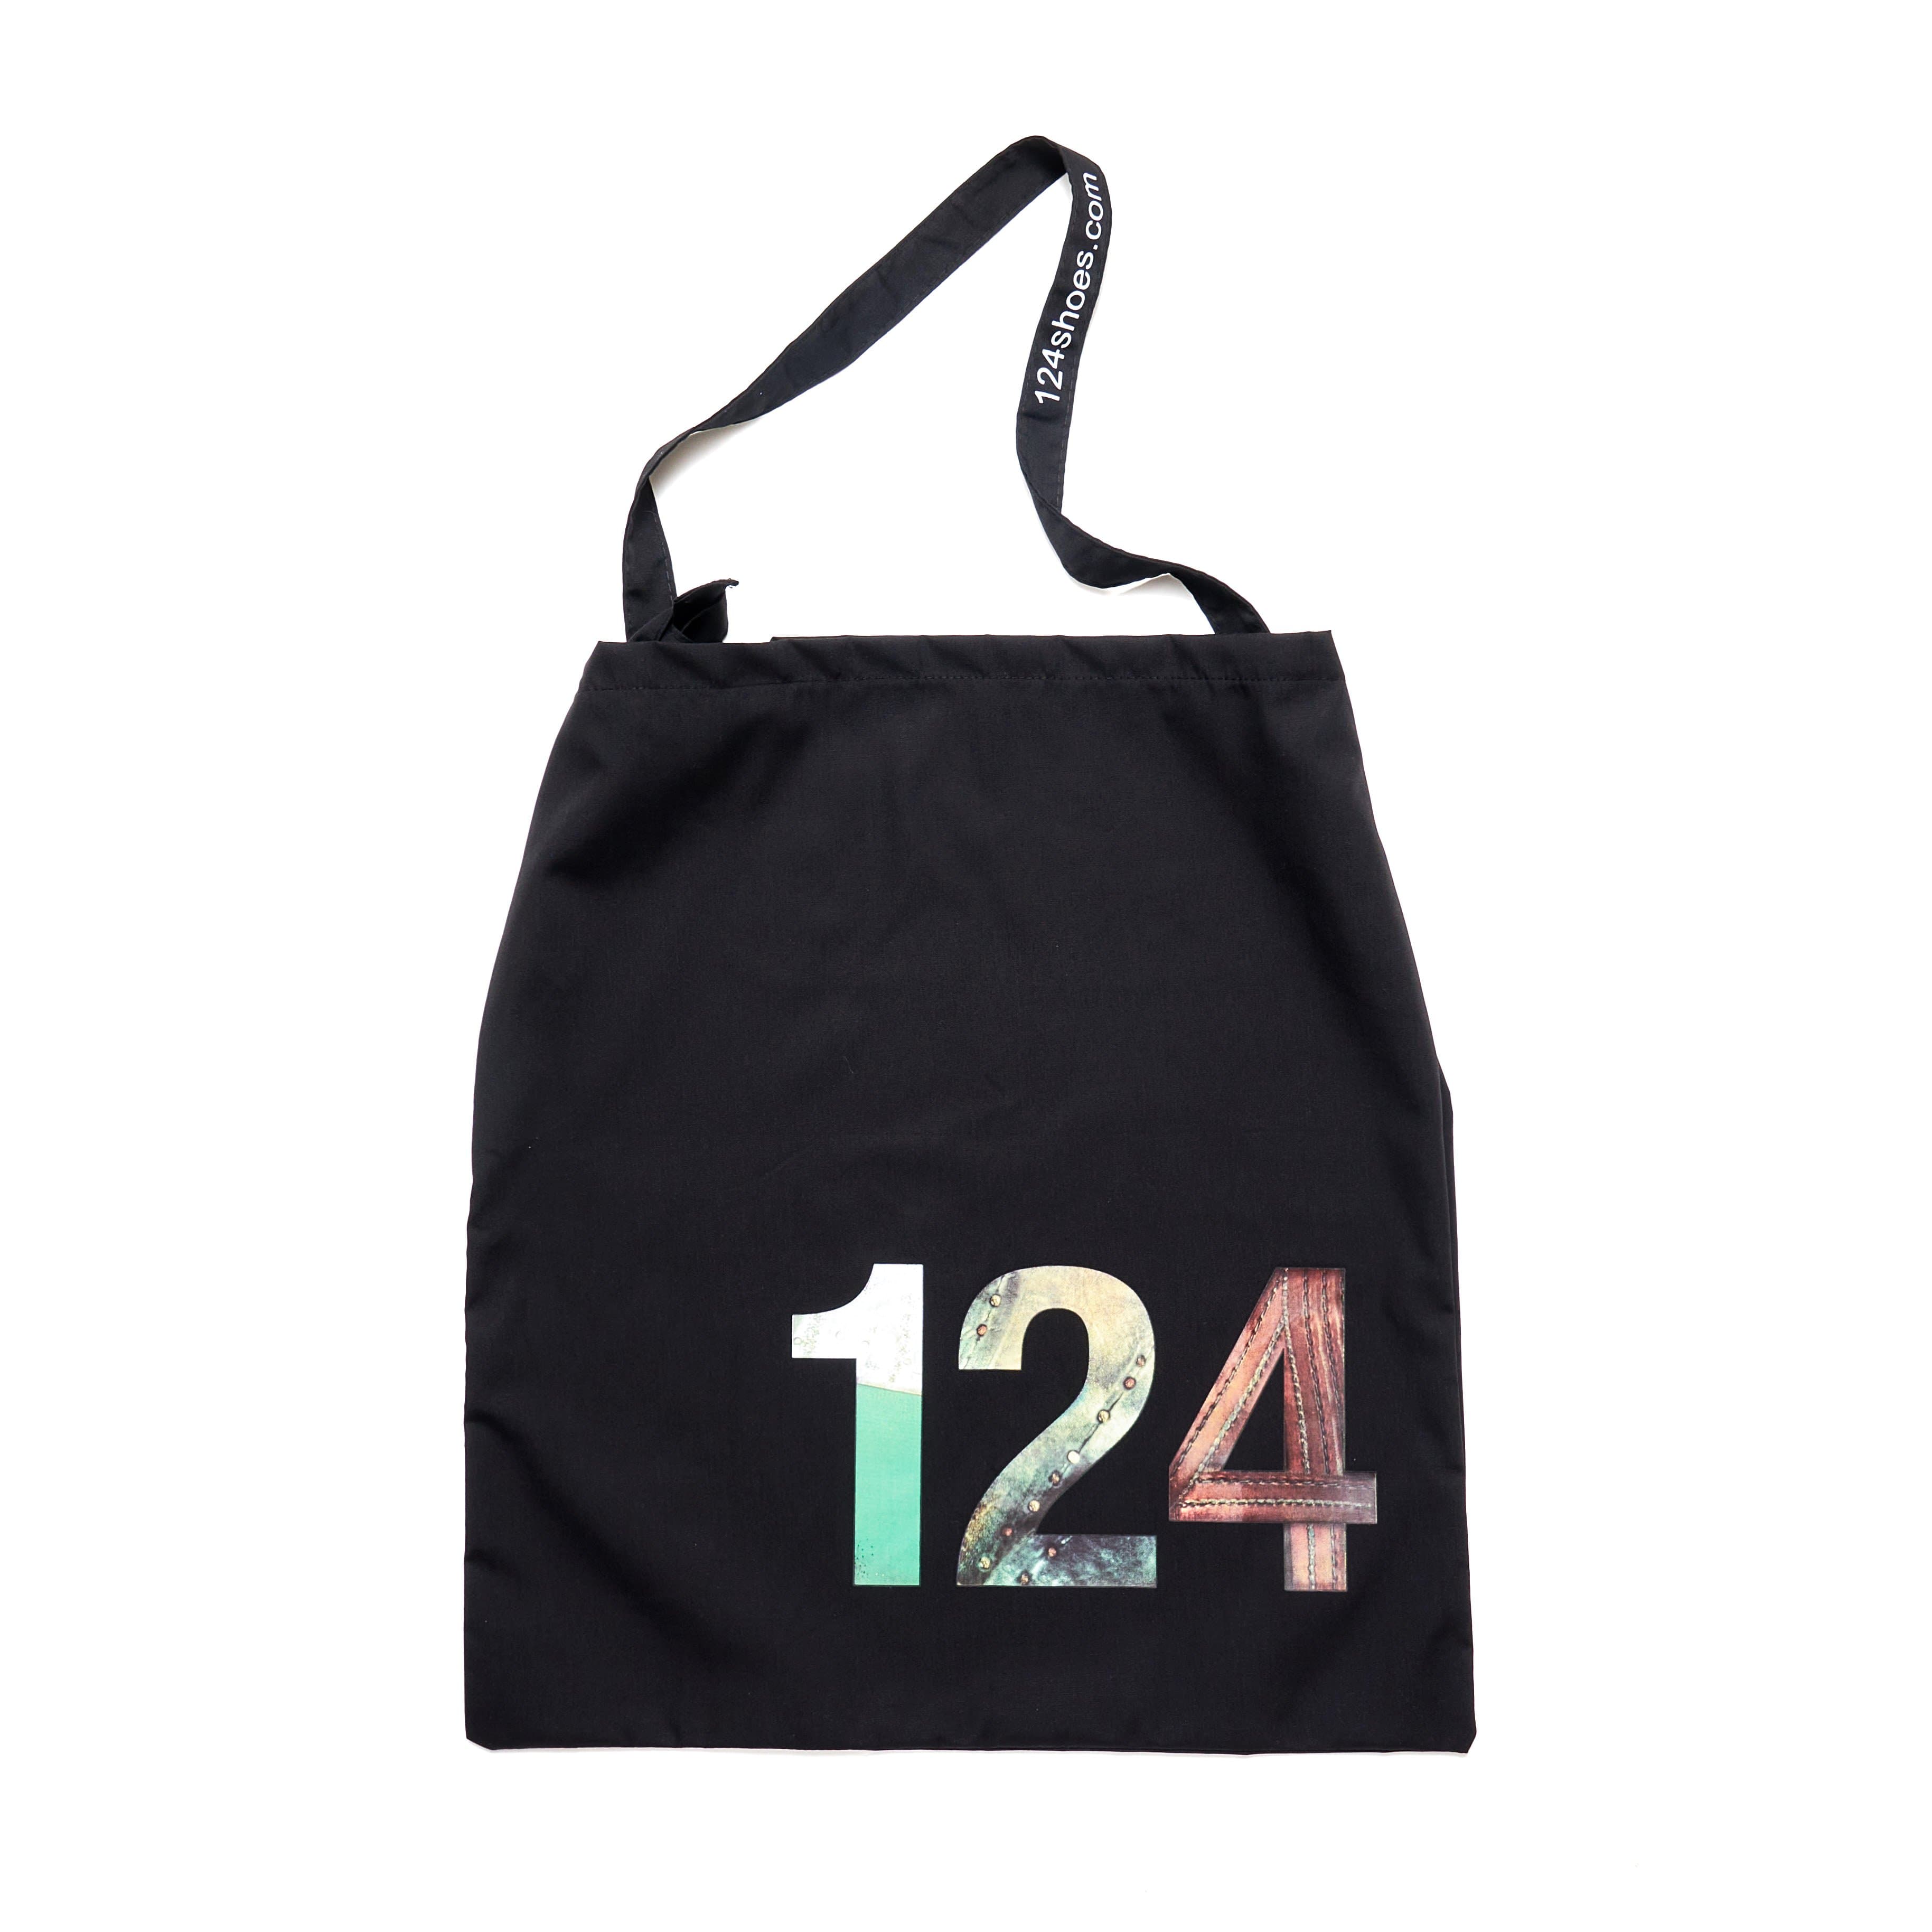 124 Bag 124 Bag - 124 Shoes